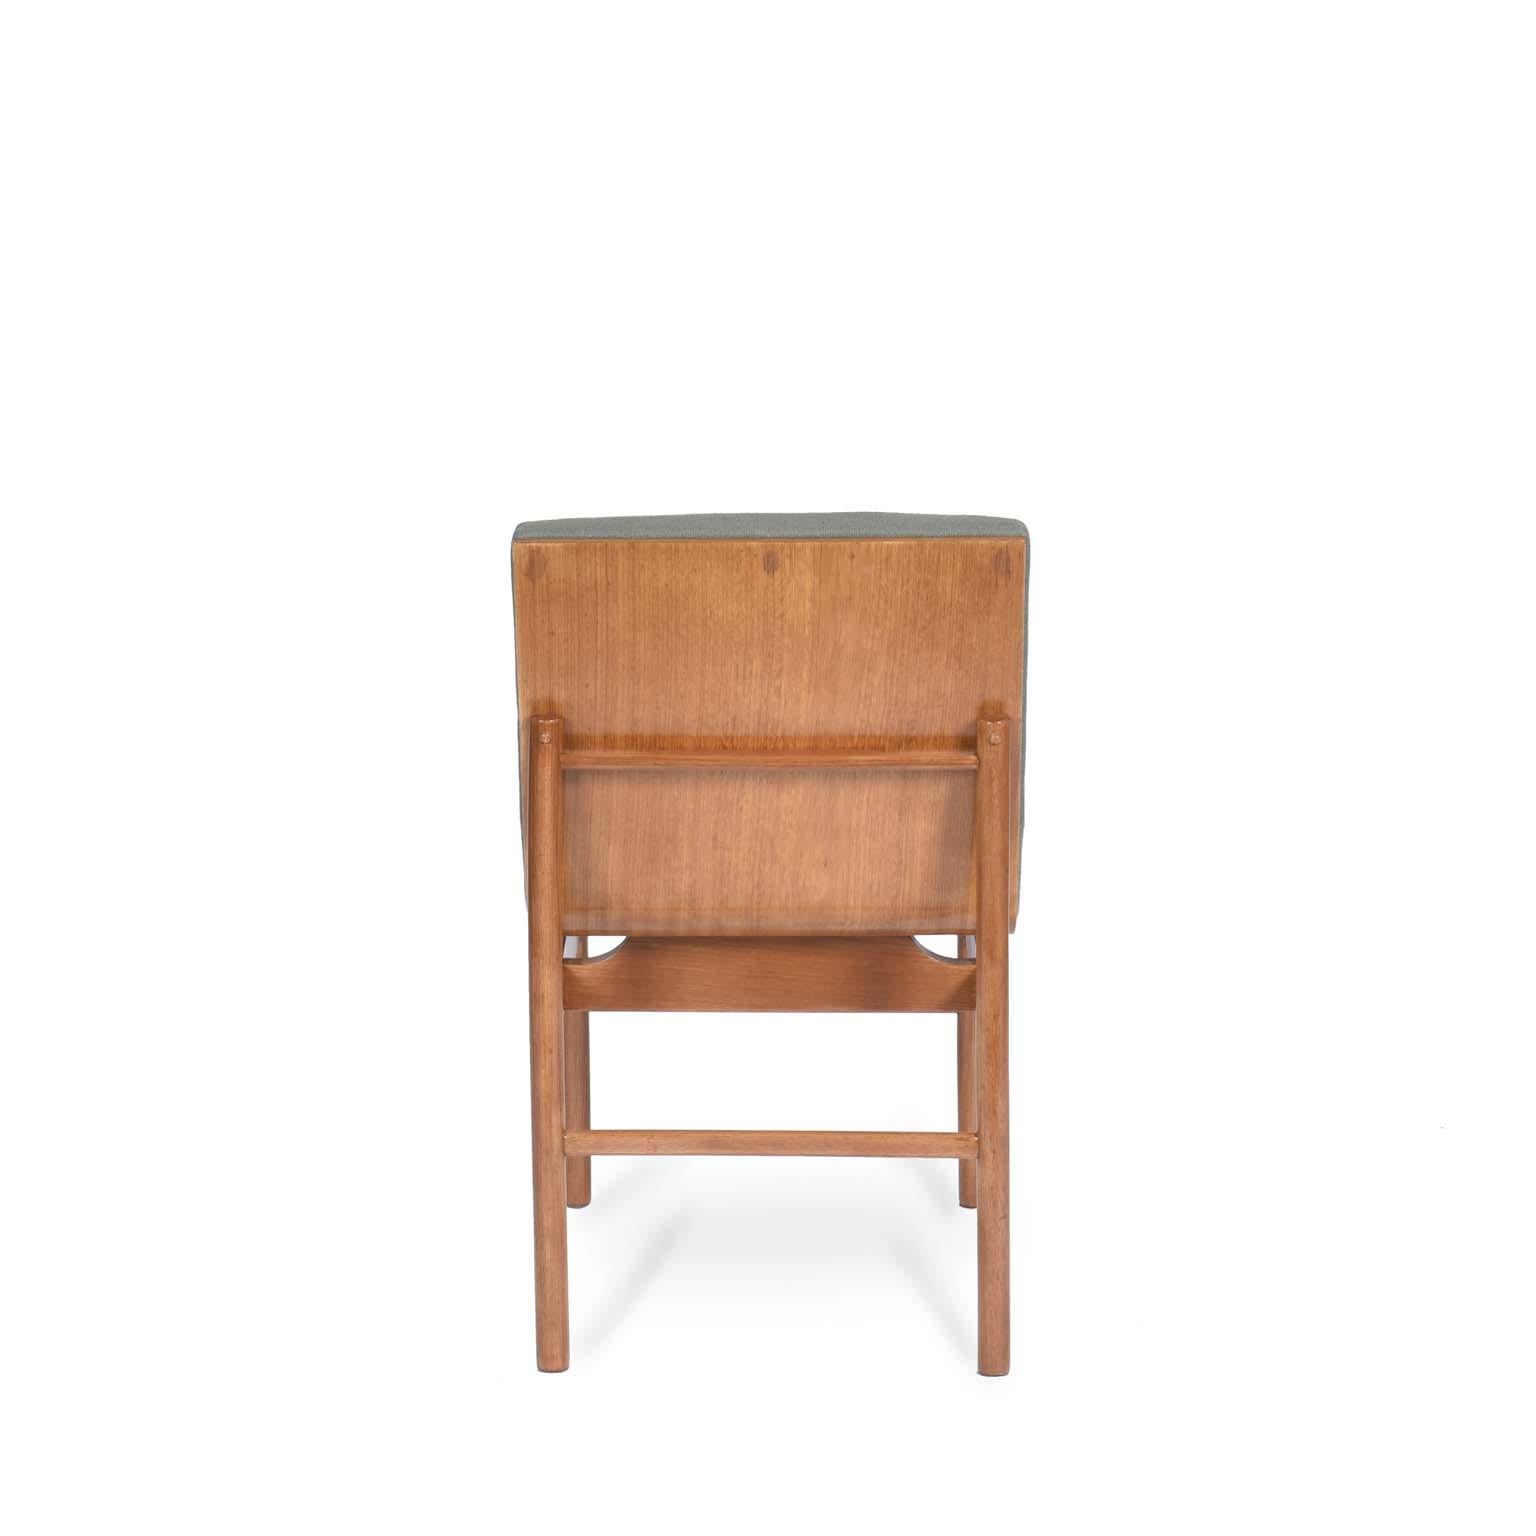 Brasilianischer Stuhl Novo Rumo aus der Mitte des Jahrhunderts mit Freijó-Holzstruktur, 1960er Jahre.

Francesco Scapinelli, der jüngere Bruder des berühmten Designers und Architekten Giuseppe Scapinelli, beschloss in den 1960er Jahren zusammen